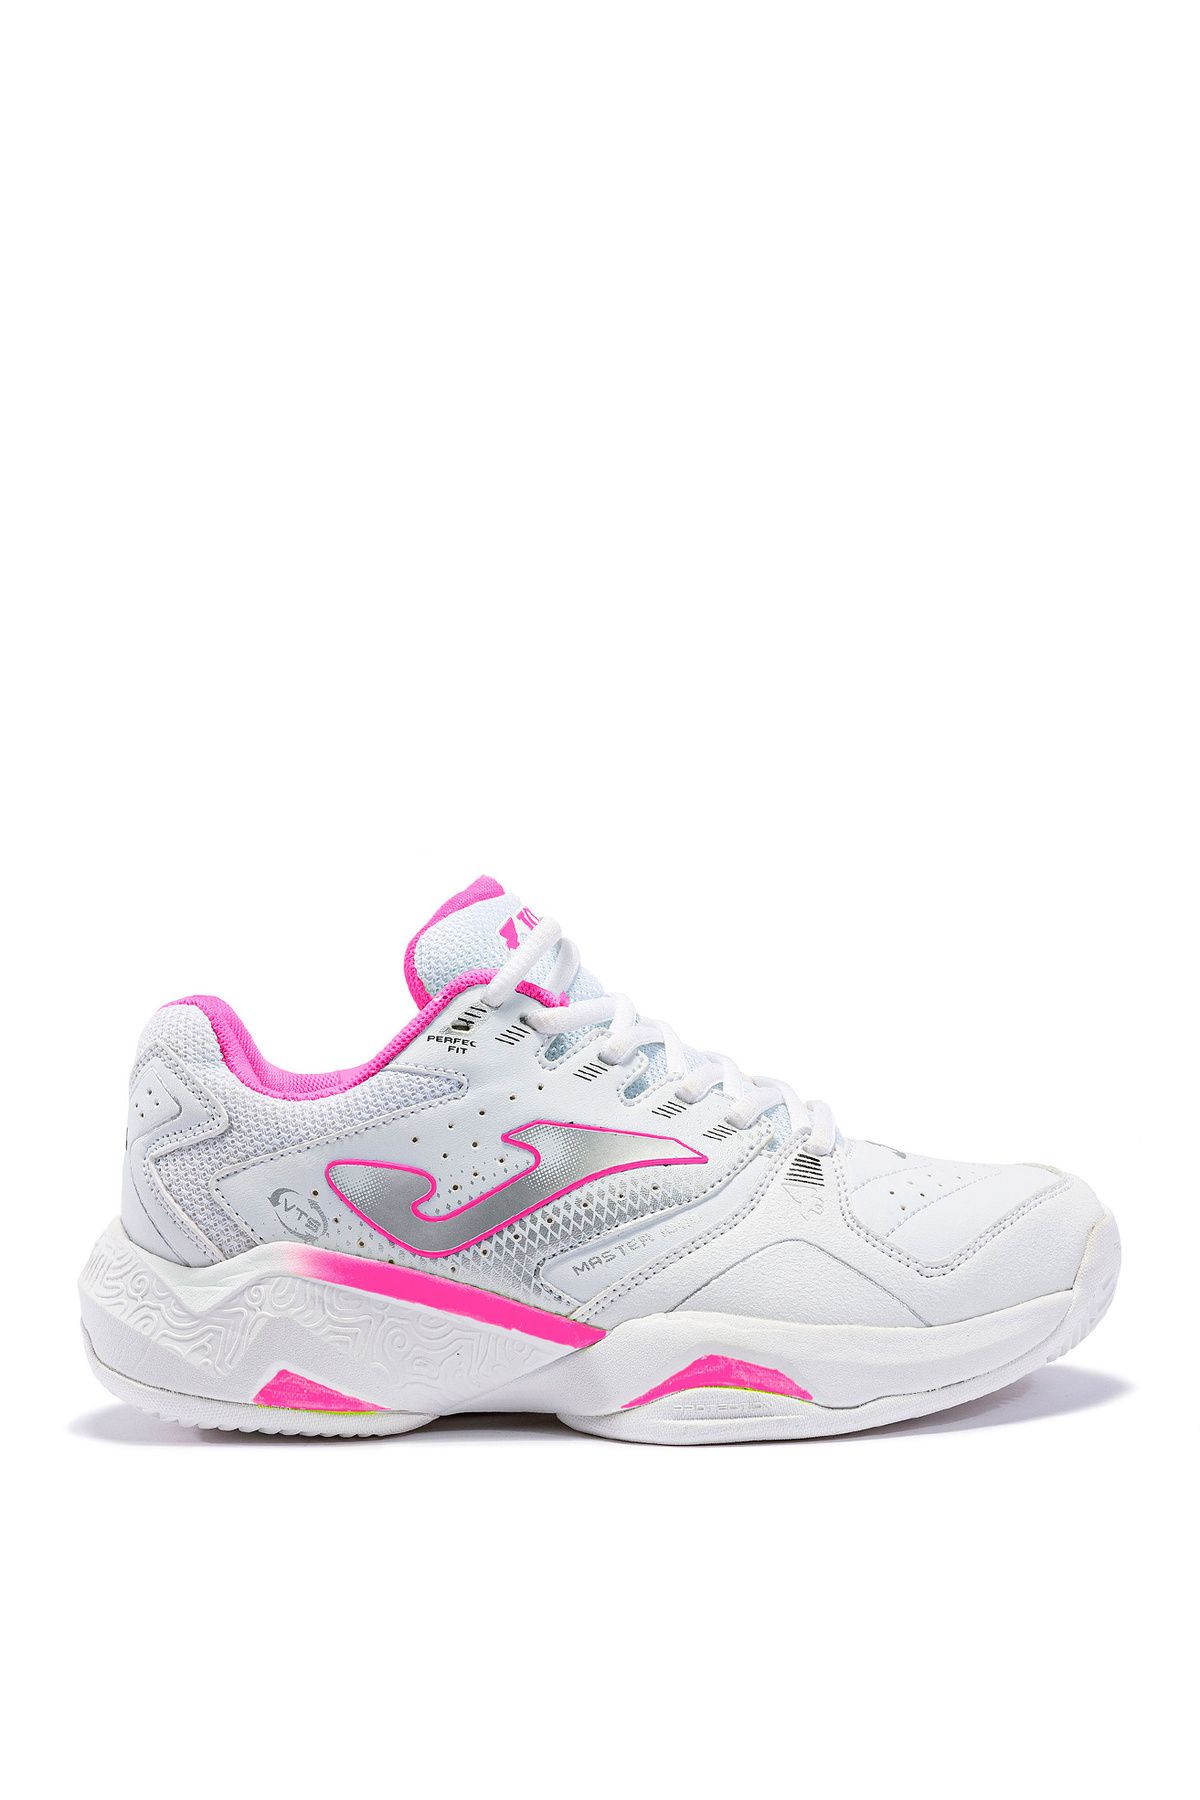 Joma Beyaz Kadın Tenis Ayakkabısı JMATW2332C MASTER 1000 JR 2332 WHIT